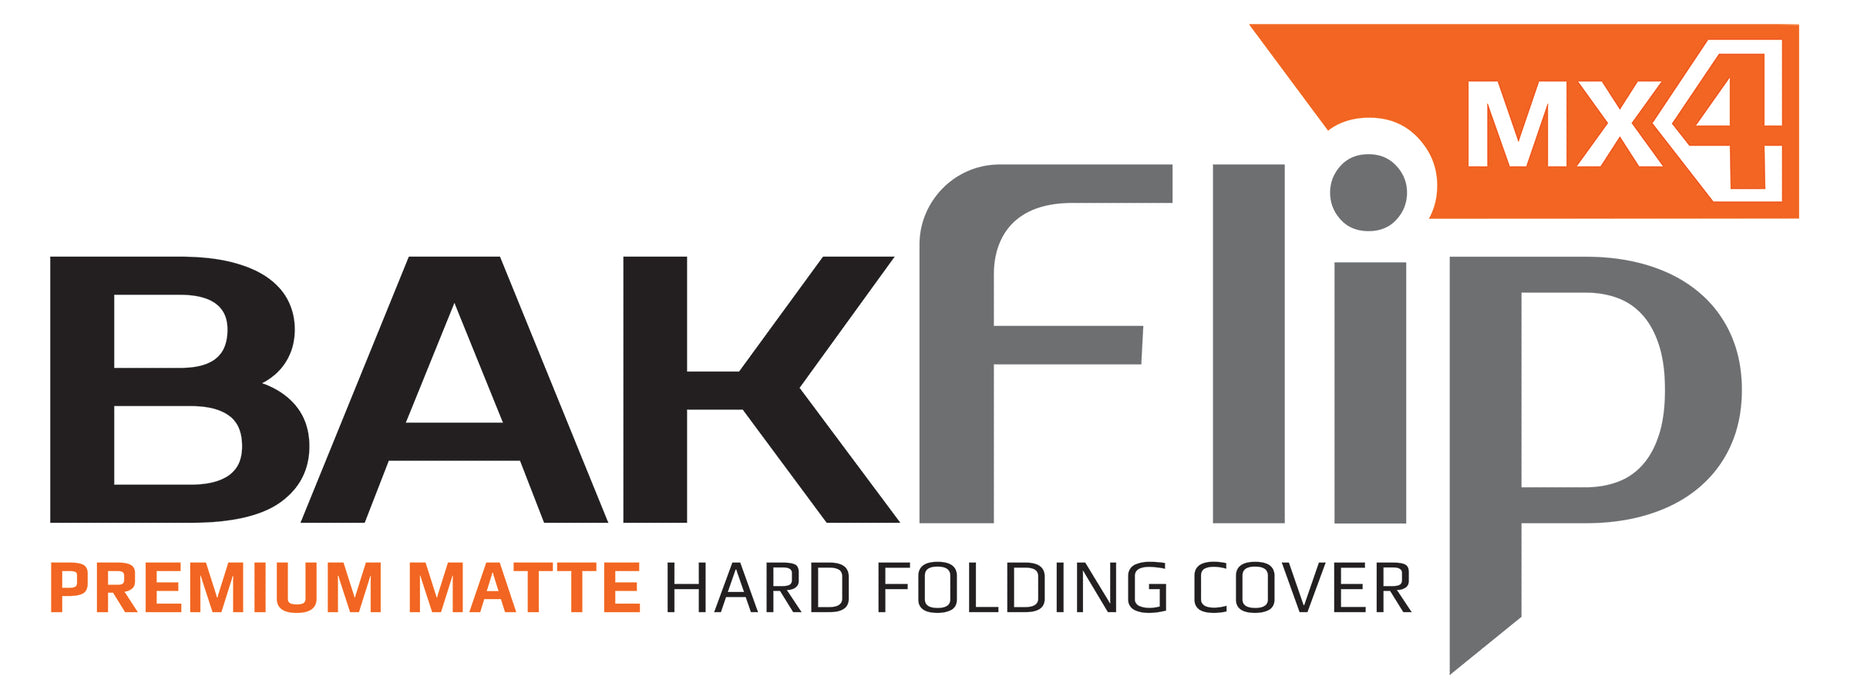 BAK BAKFlip MX4 Hard Folding Truck Bed Cover - Matte Finish - 2020-2023 Chevy Silverado/GMC Sierra 2500 HD/3500 HD 8' Bed Model 448134